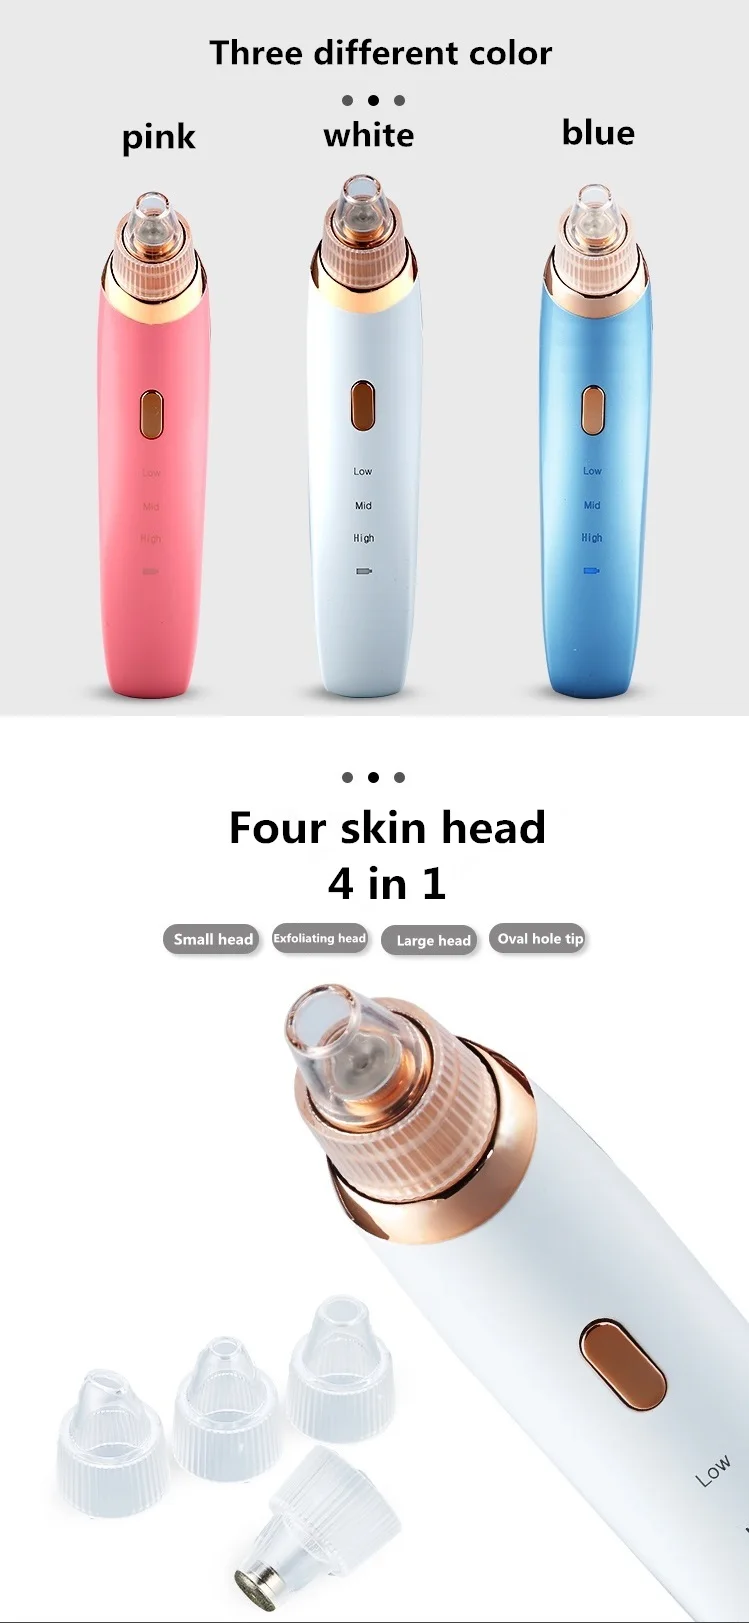 Прибор для удаления угрей Comedo вакуумный очиститель для лица и носа устройство удаления акне кожи микродермабразия оборудование для пилинга